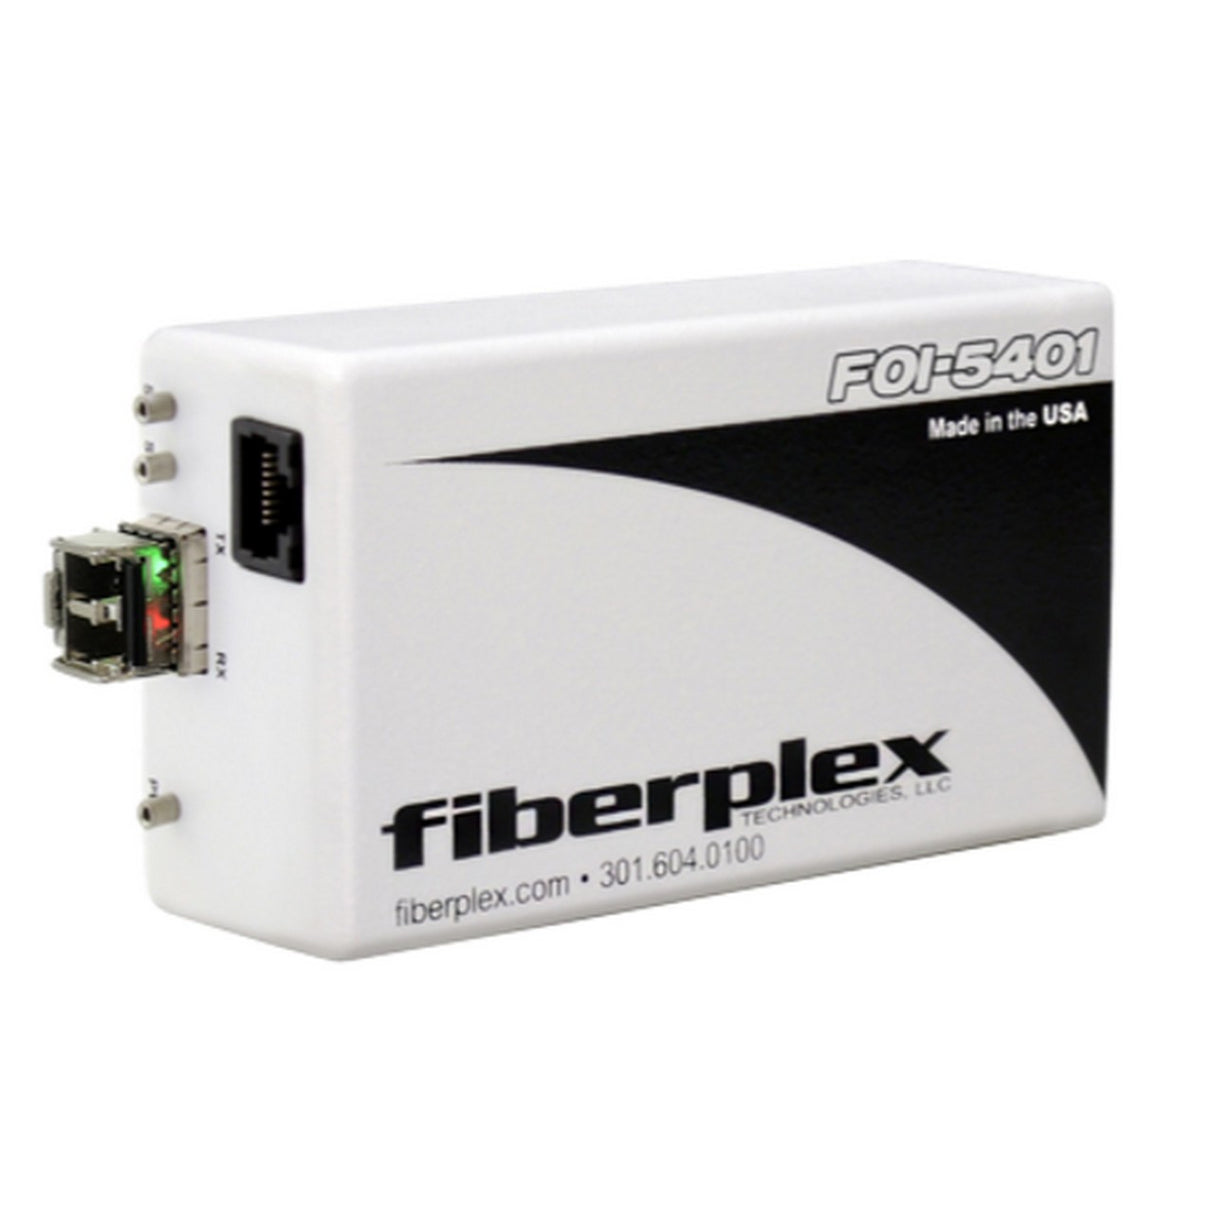 fiberplex FOI-5401-L22 | Isolator for T1 DS-1 or ISDN PRI Interface